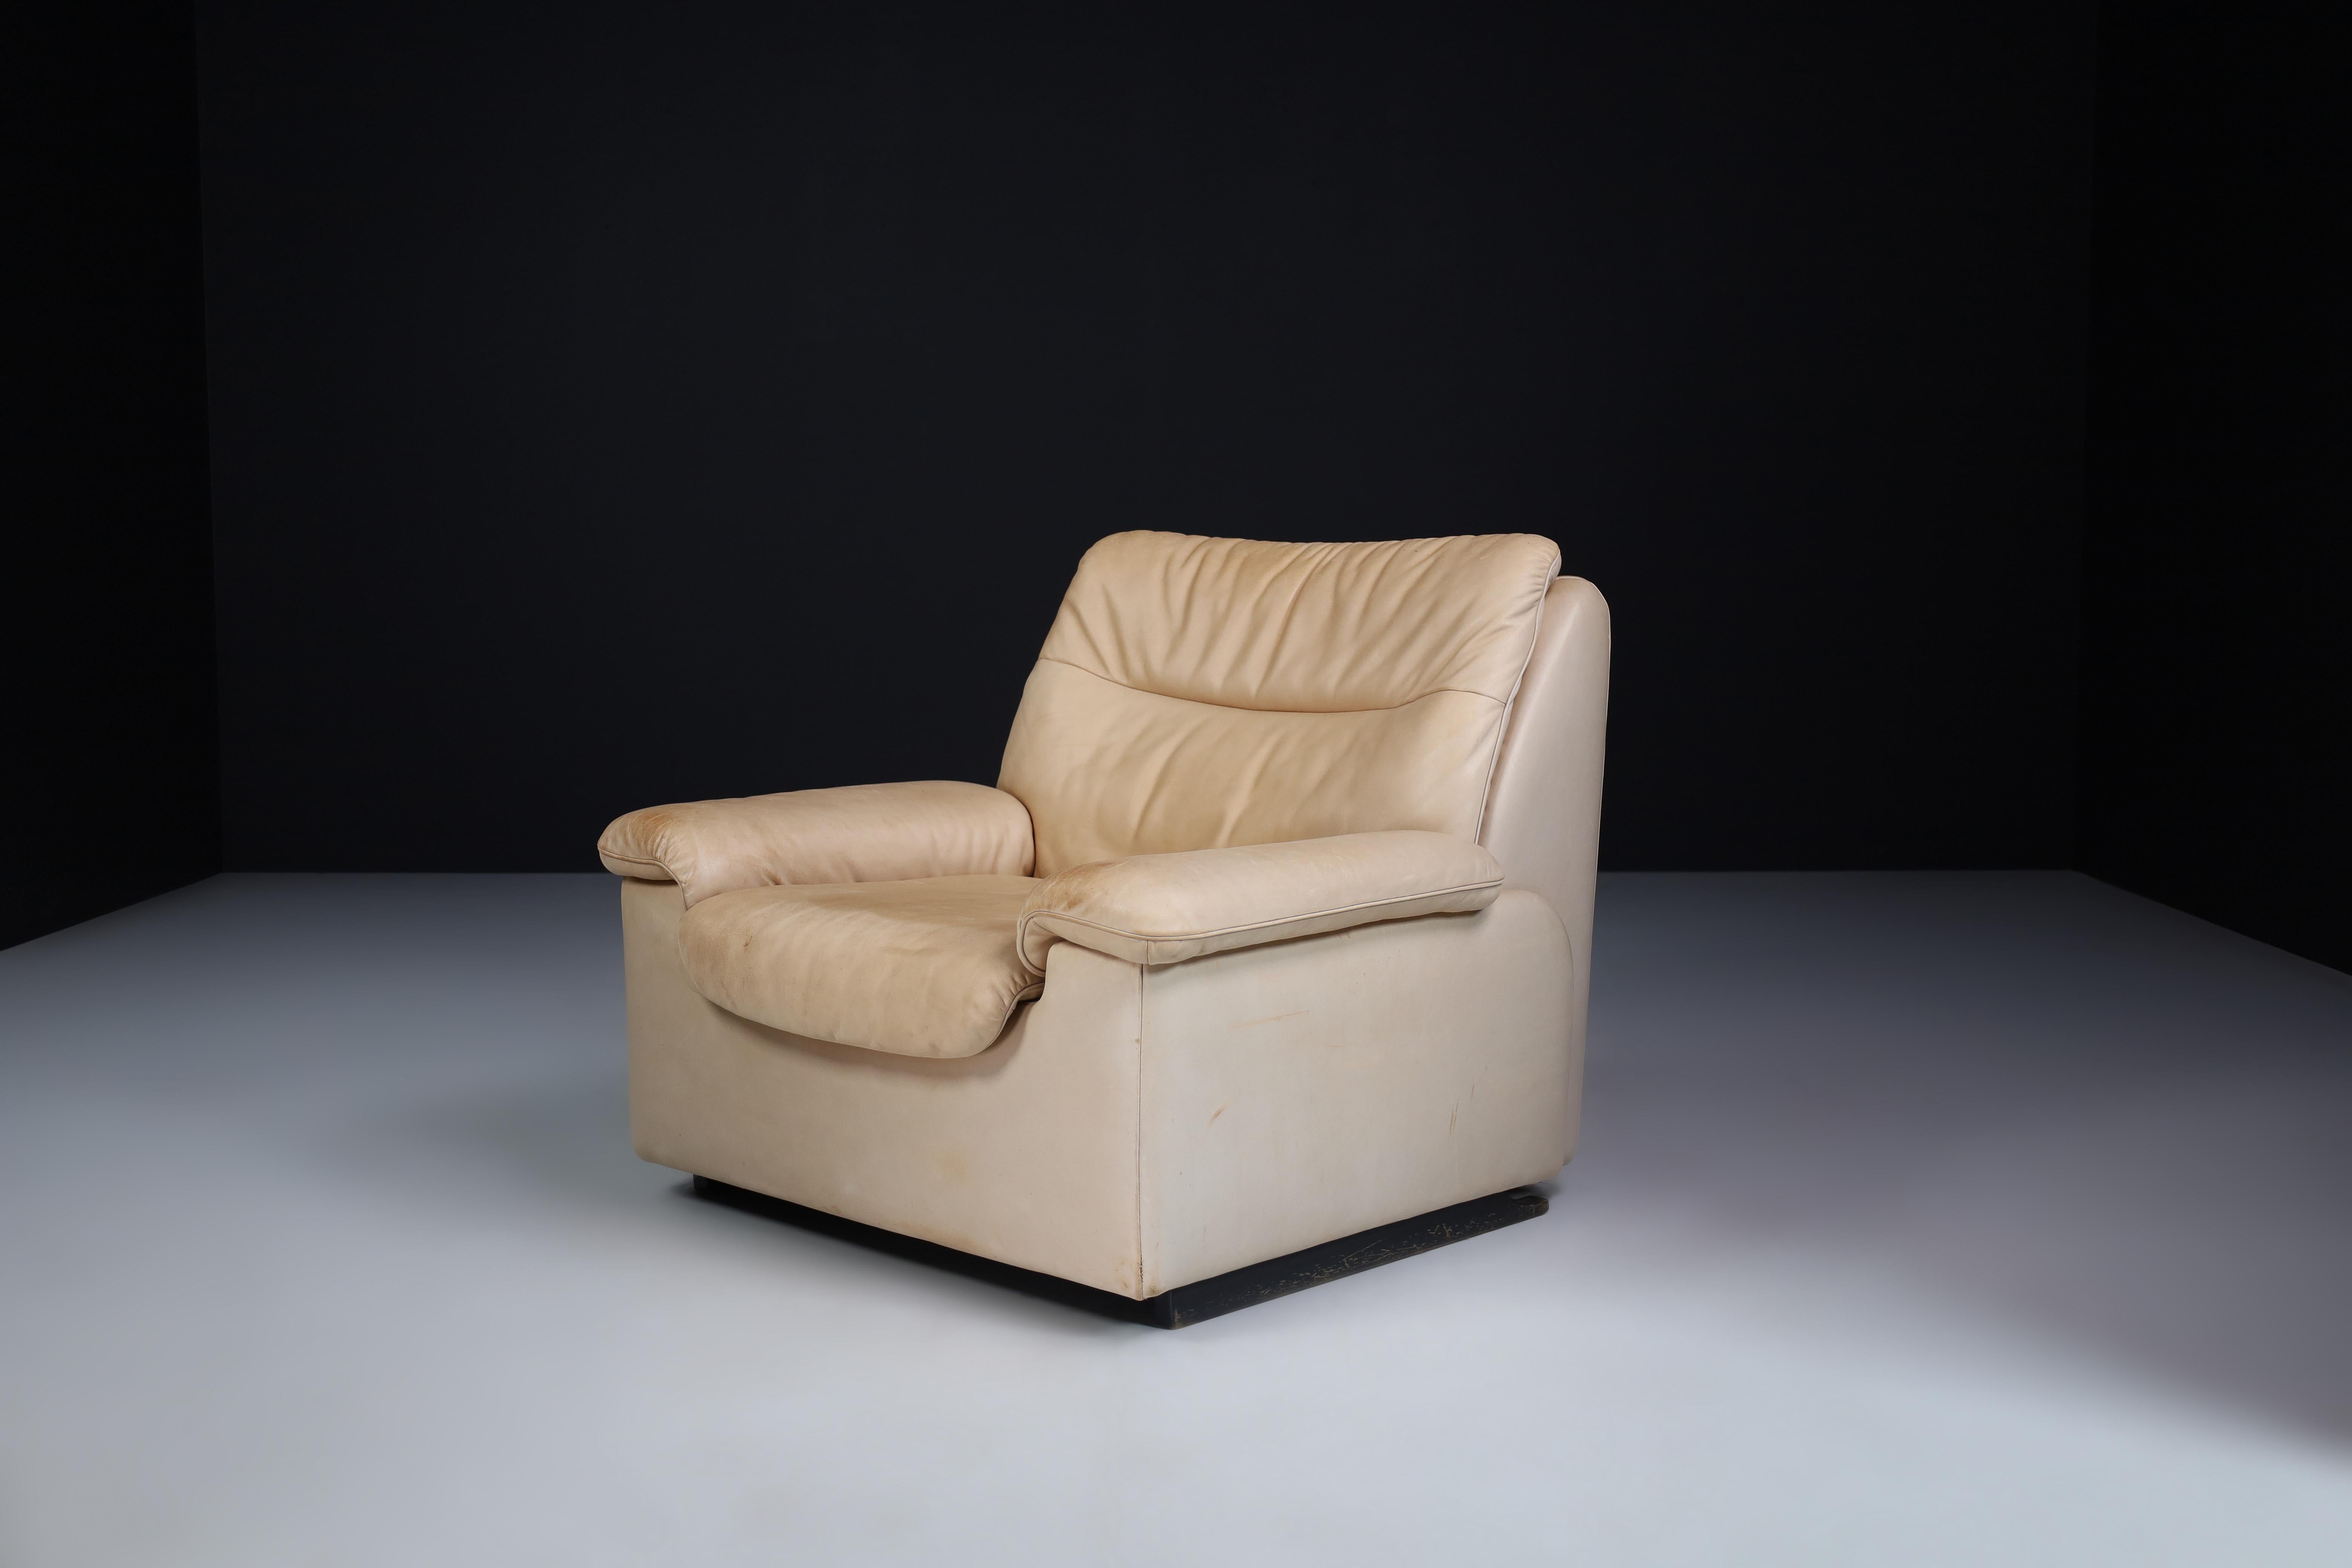 De Sede DS 63 Loungesessel in Leder, Schweiz 1970er Jahre

Robuster Sessel DS-63. Dieser Sessel von De Sede bietet mit seinem massiven Holzrahmen und der dicken, handgenähten Lederpolsterung höchsten Komfort und Bauqualität. Schöne ursprüngliche